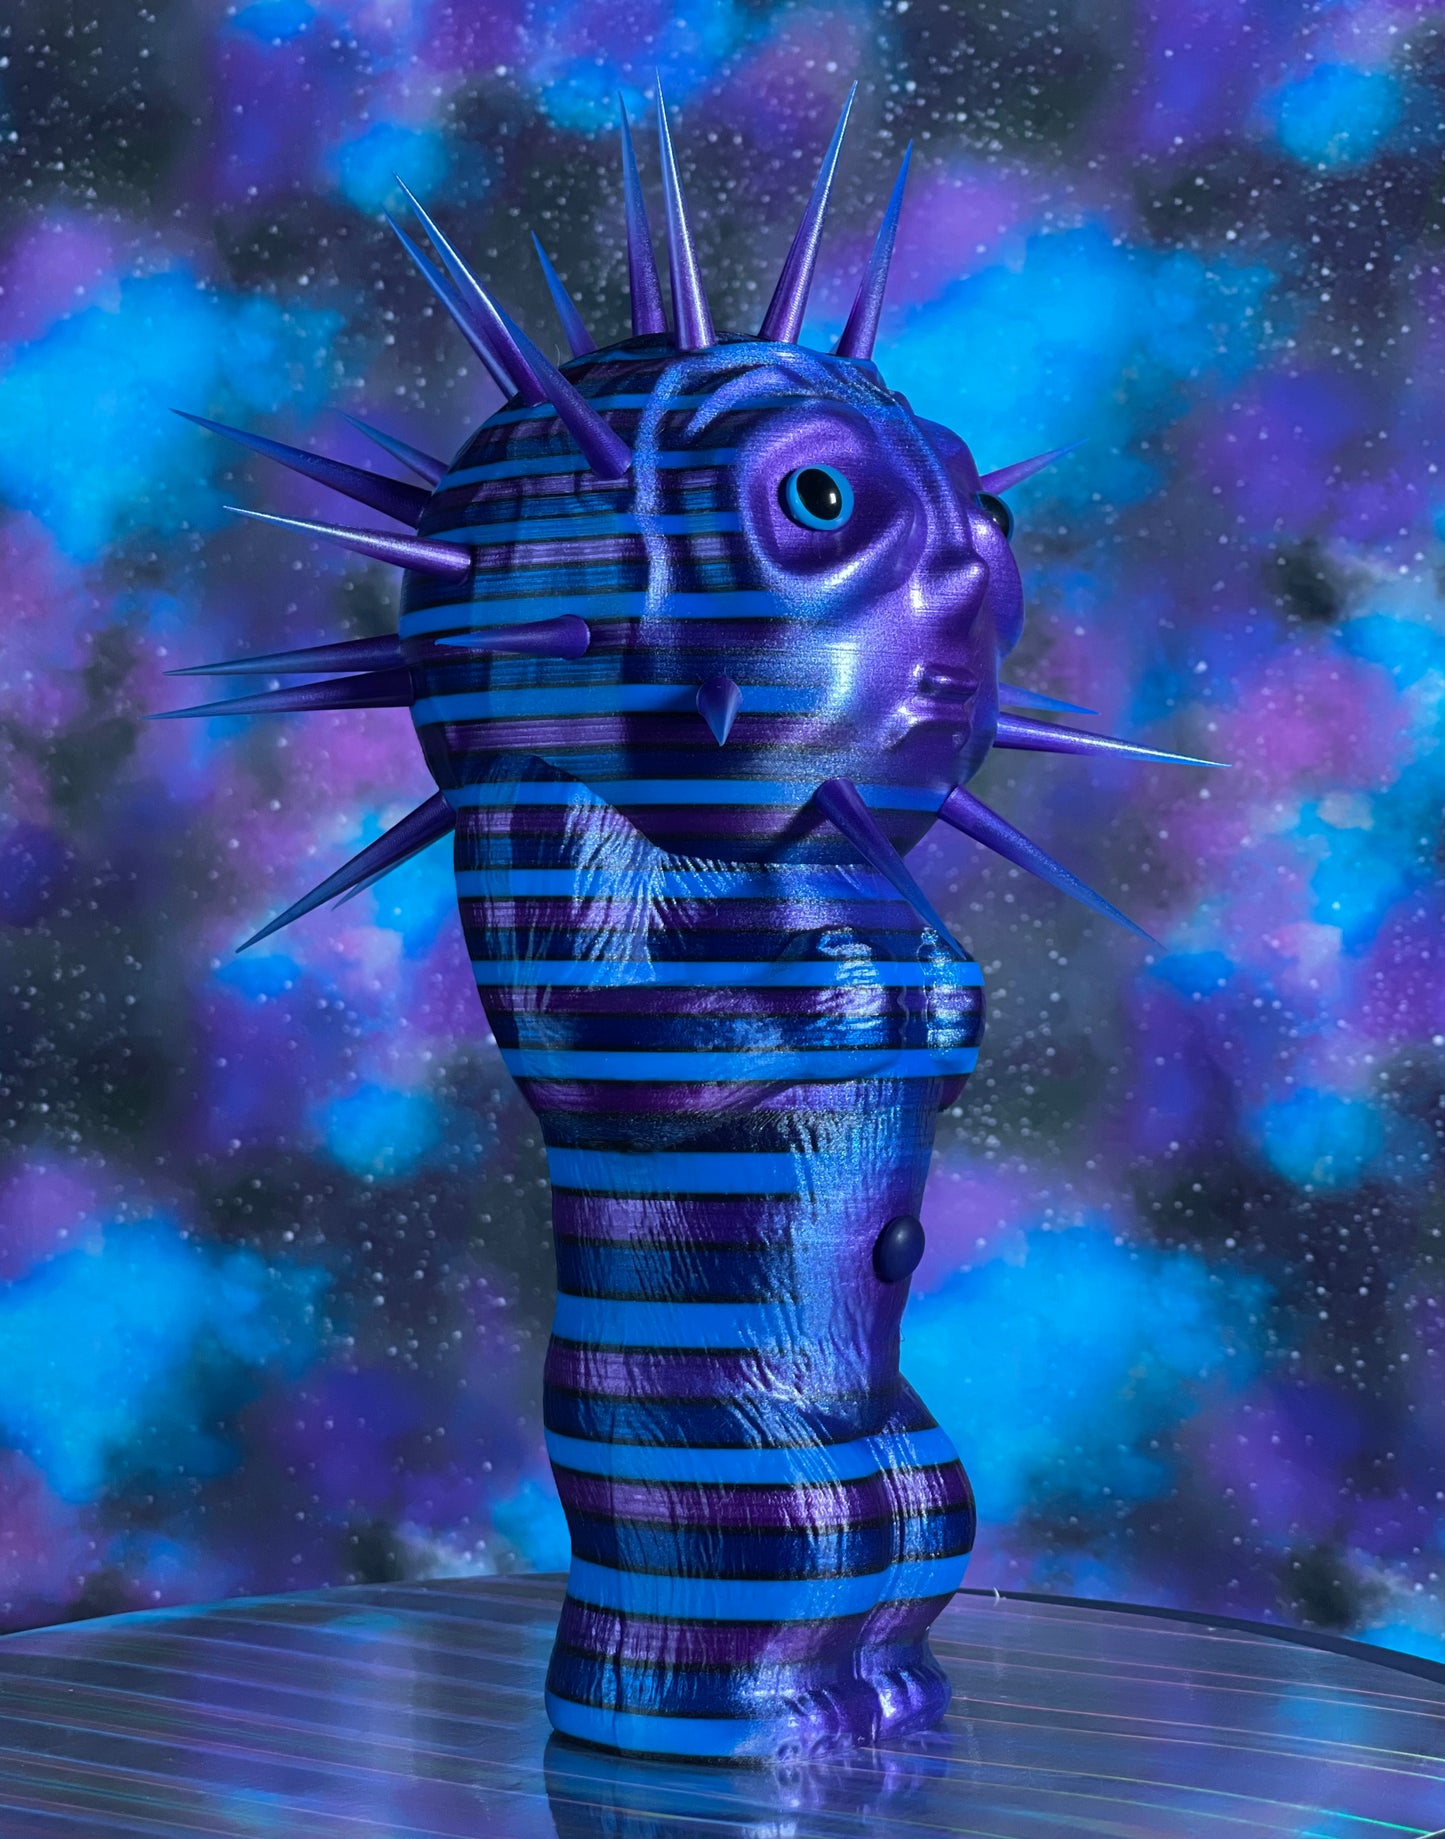 Moon Head Freak: Purple and Blue Poke Head